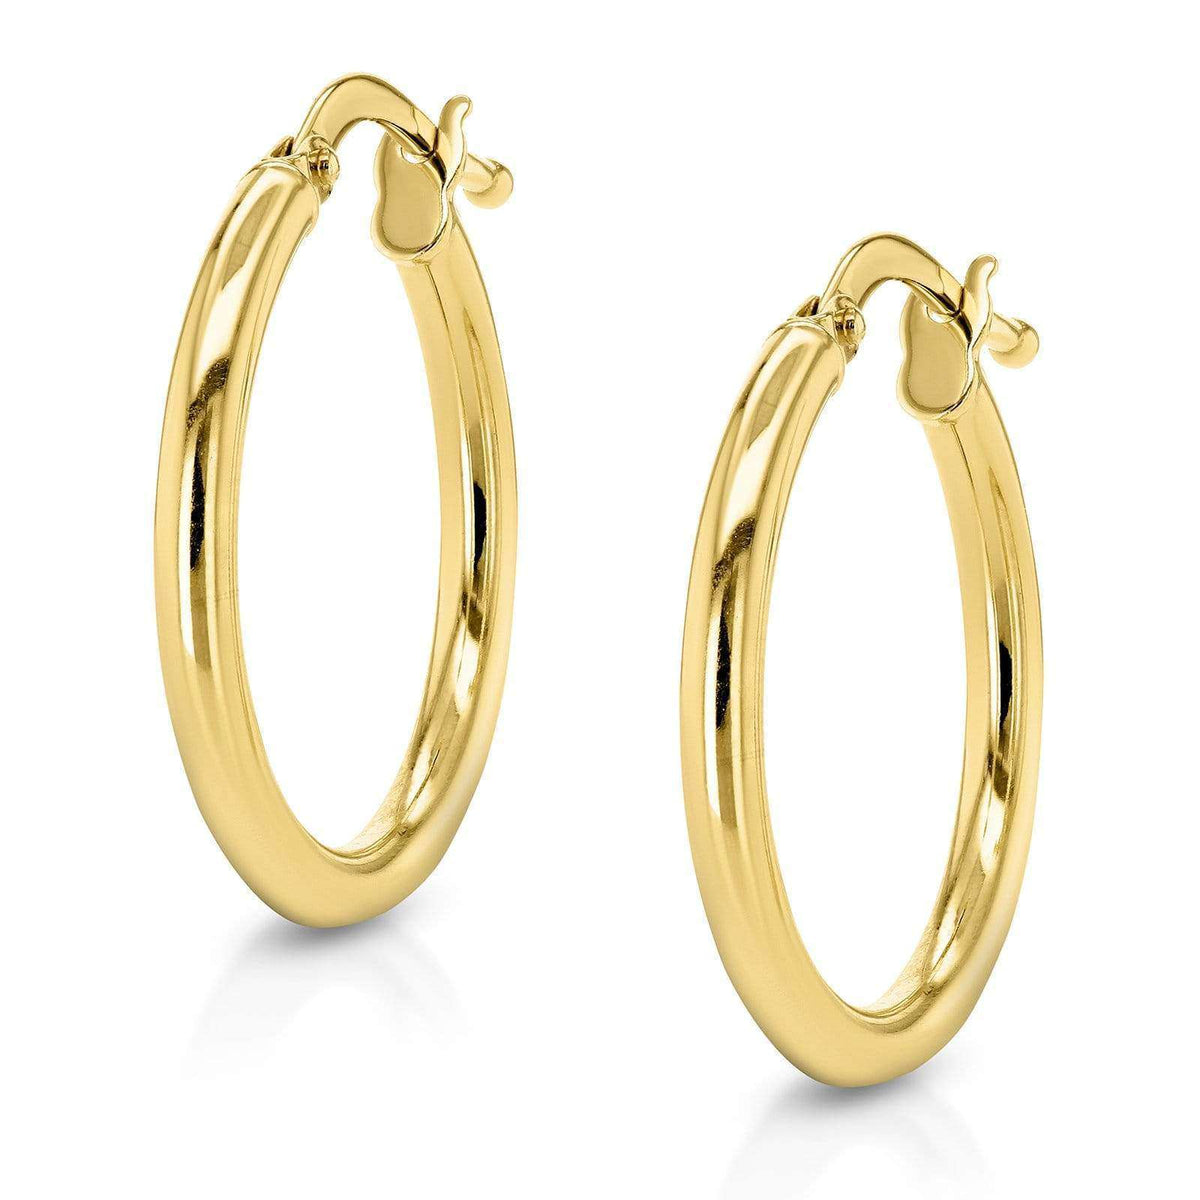 Endless Gold Hoop Earrings (15mm x 2mm)